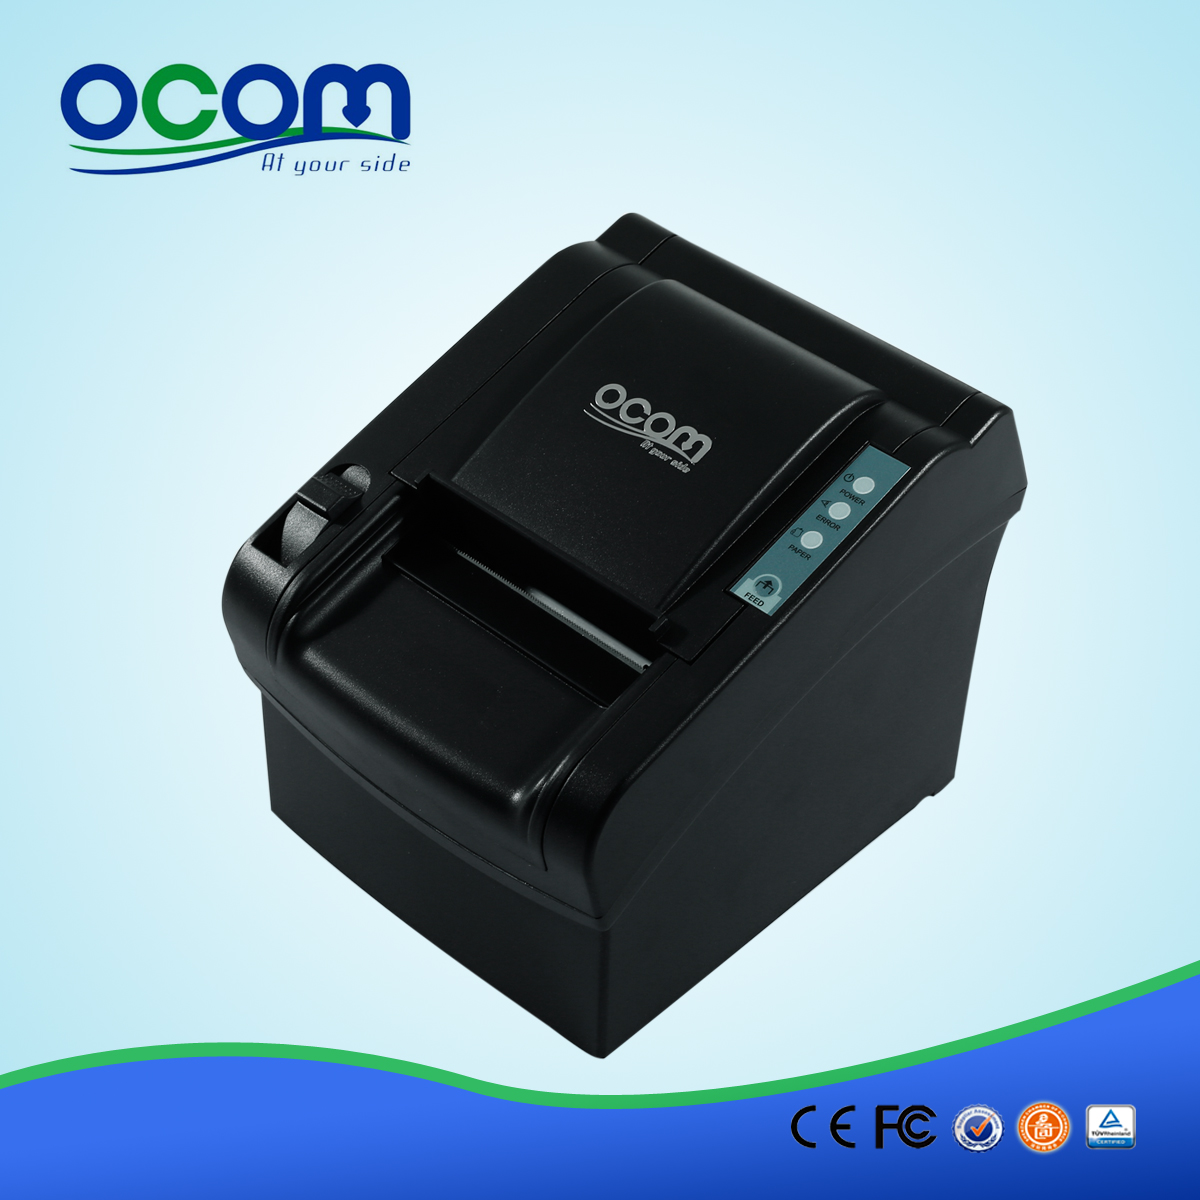 OCPP-802: 80MM جودة عالية رأس الطابعة الحرارية، ونقاط البيع طابعة حرارية رخيصة